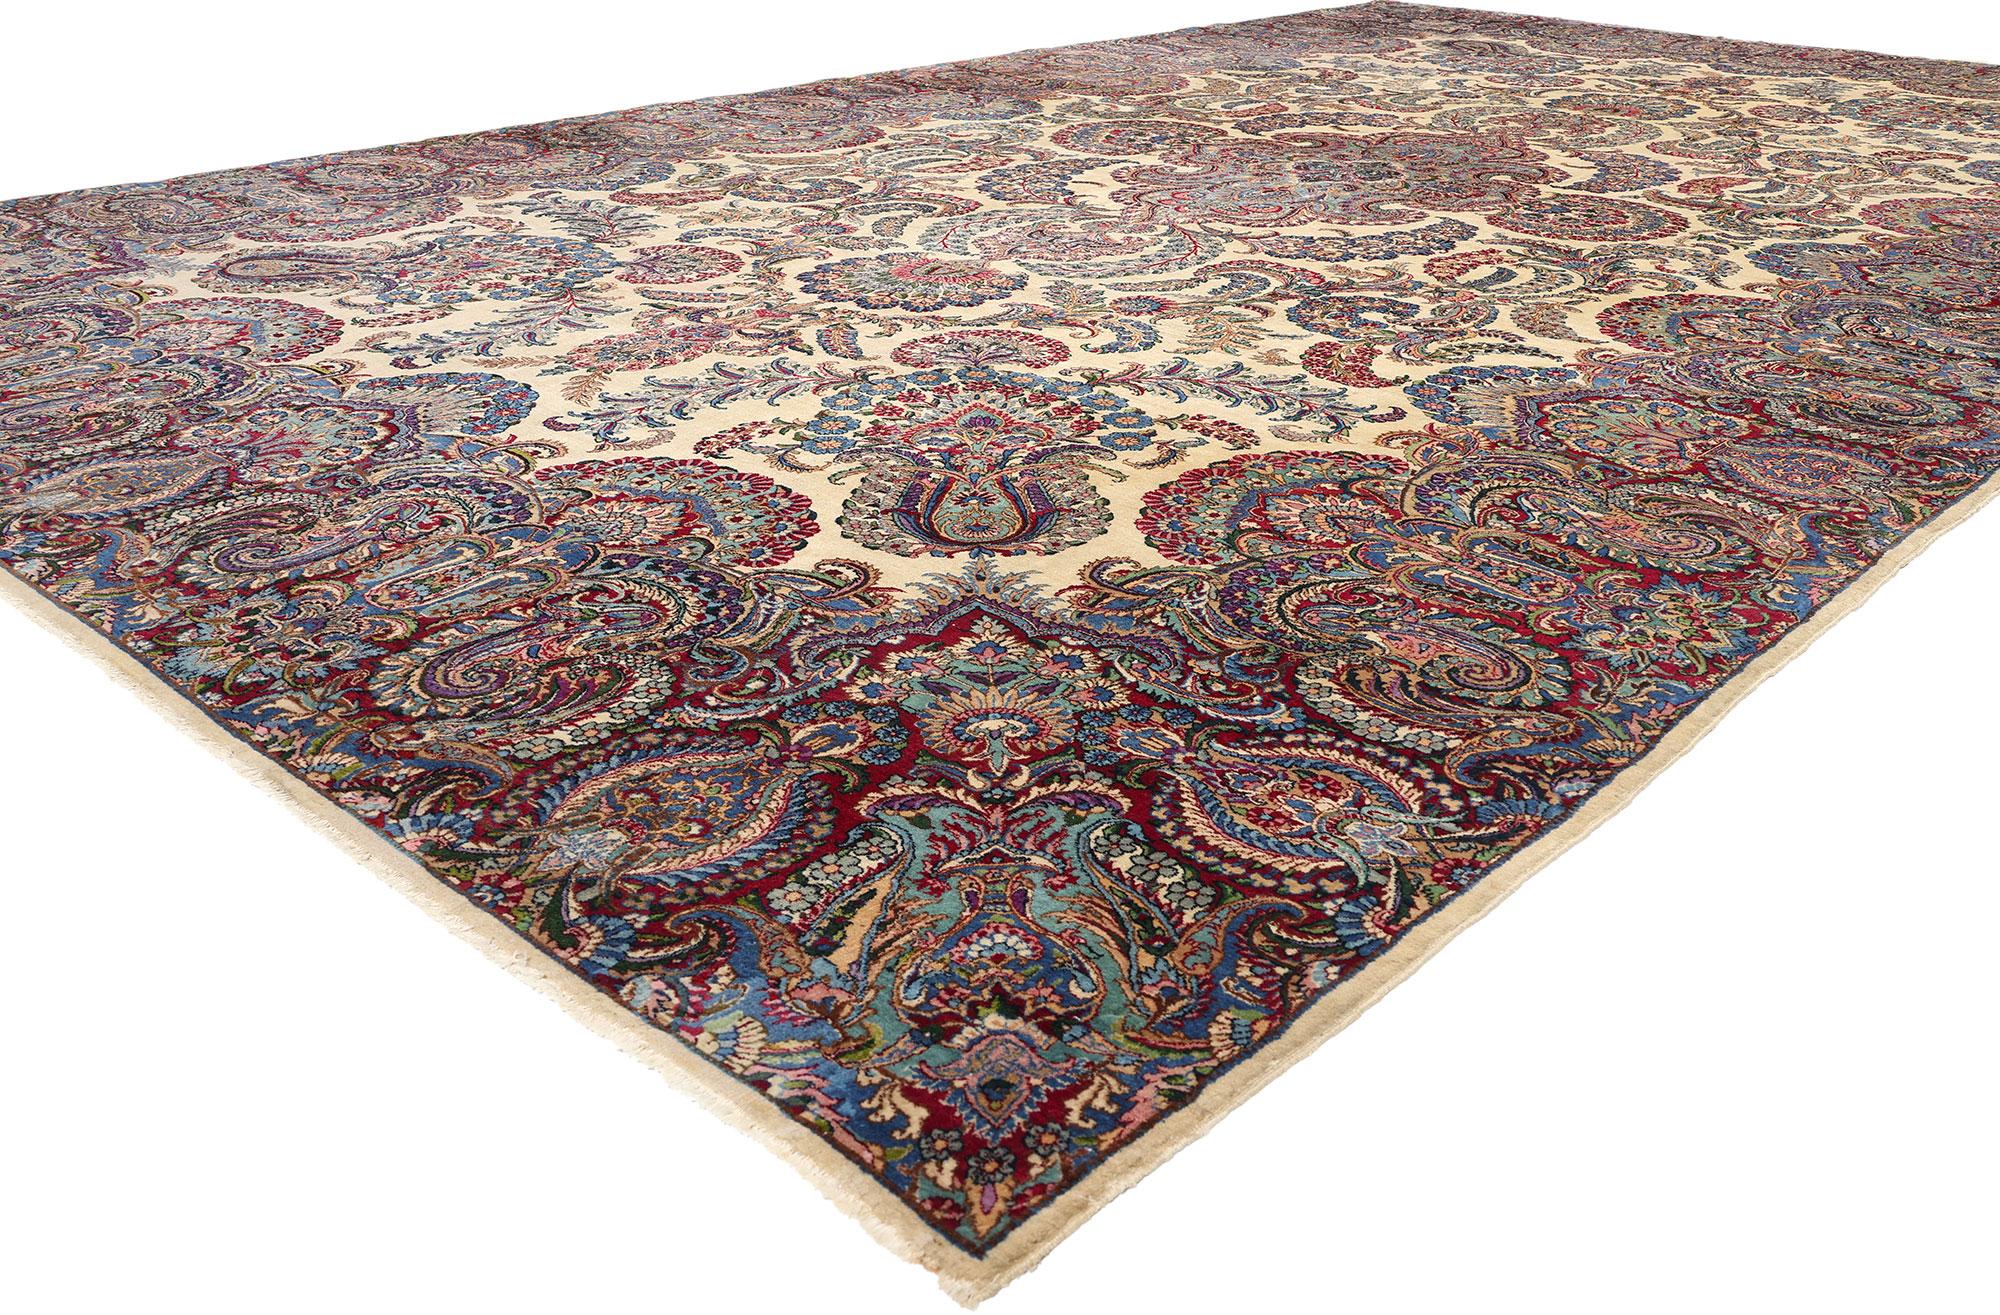 78750 Tapis Kerman ancien surdimensionné, 11'08 x 19'05. Les tapis persans surdimensionnés de Kerman sont des tapis de grande taille originaires de la ville de Kerman en Iran. Ces tapis se caractérisent par leurs dimensions généreuses, qui dépassent